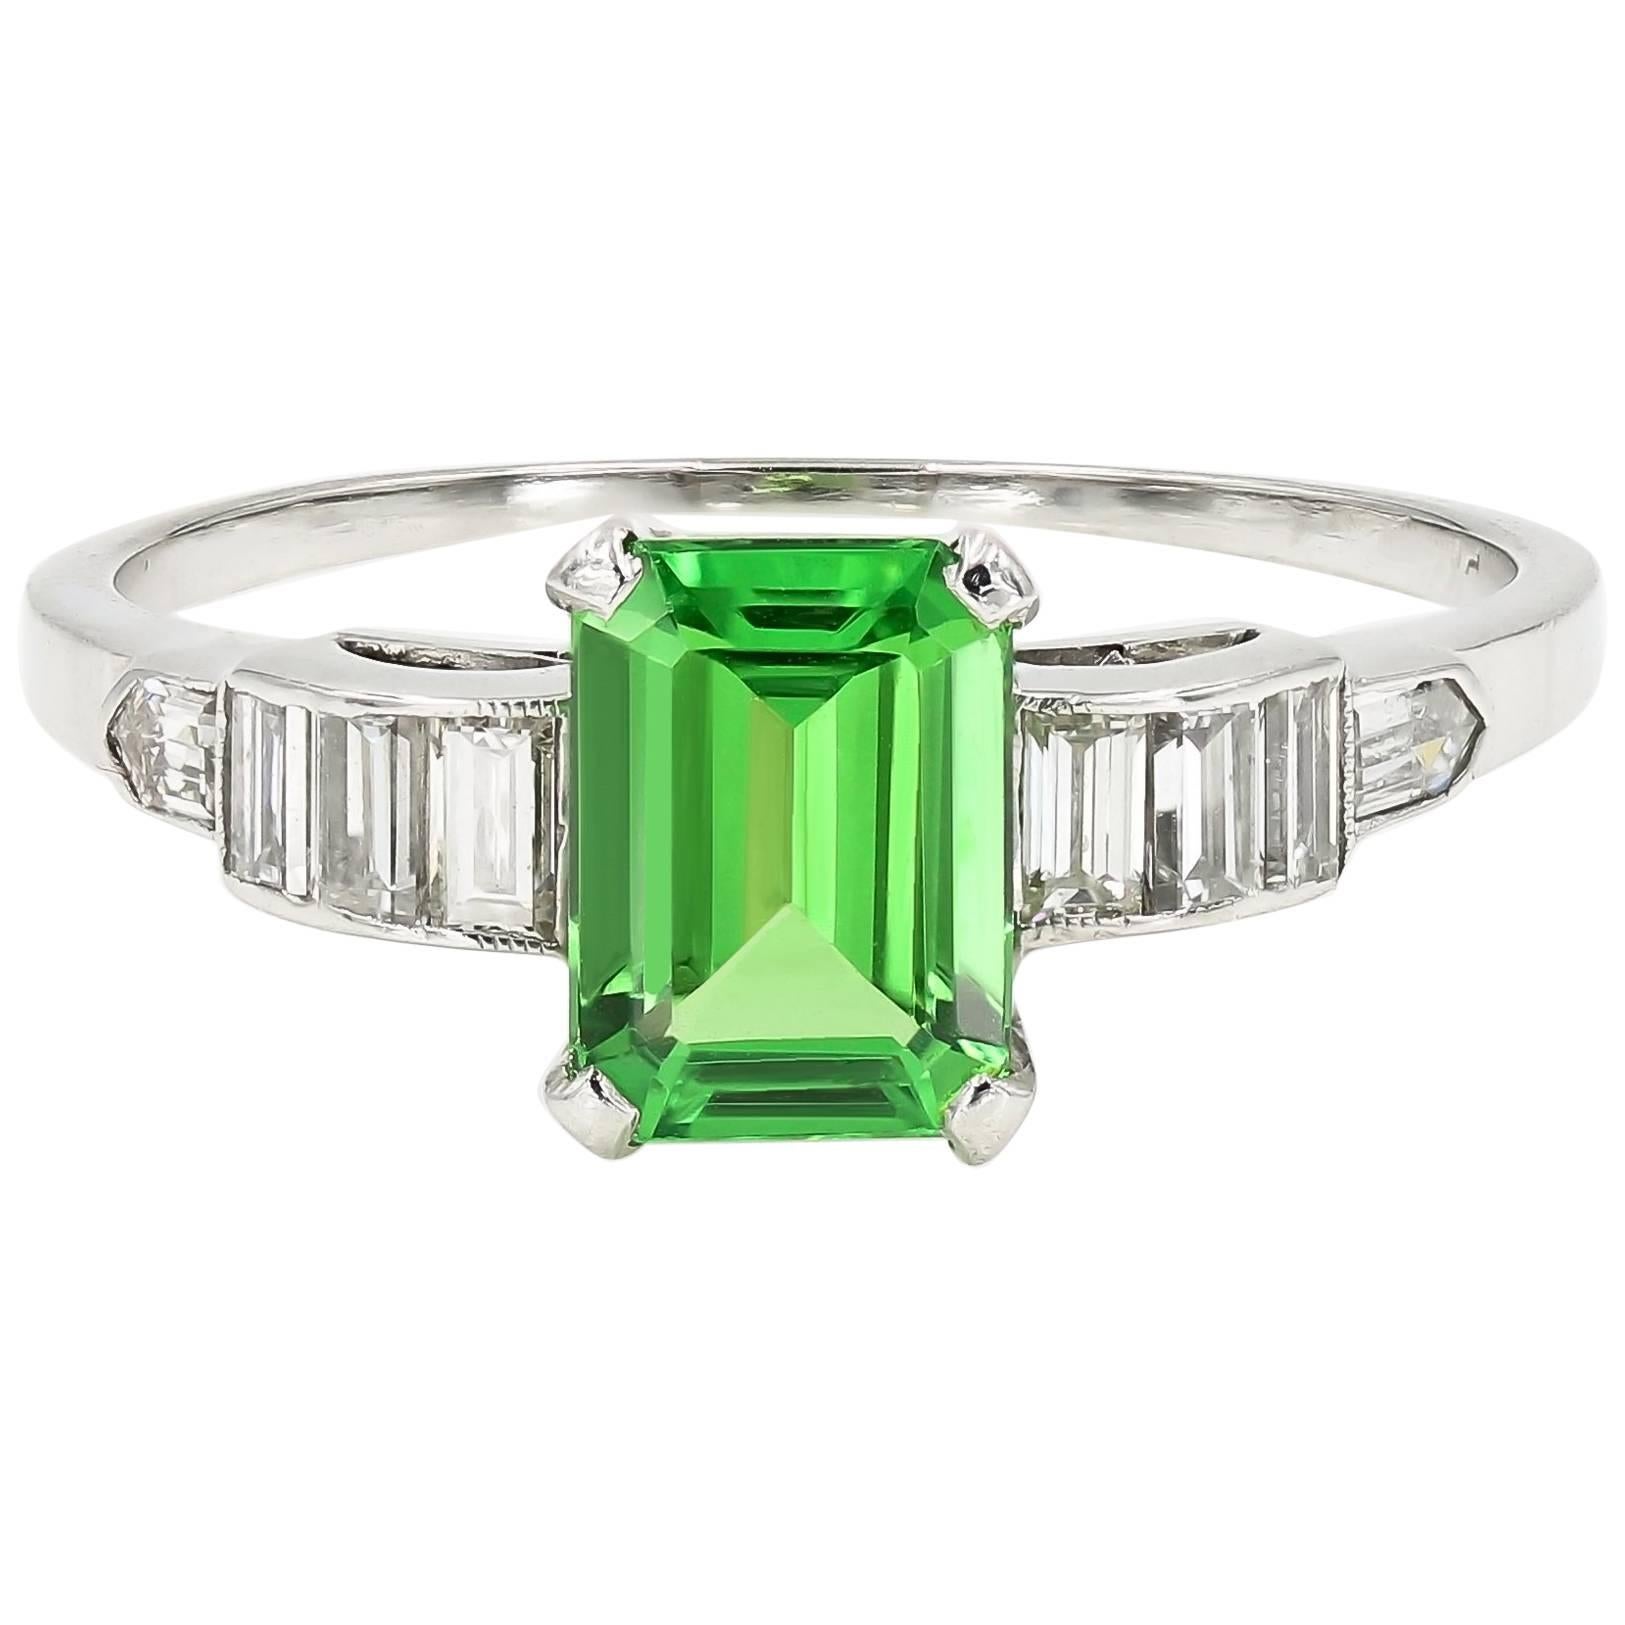 Emerald Cut Natural Tsavorite and Baguette Diamond Ring in Platinum